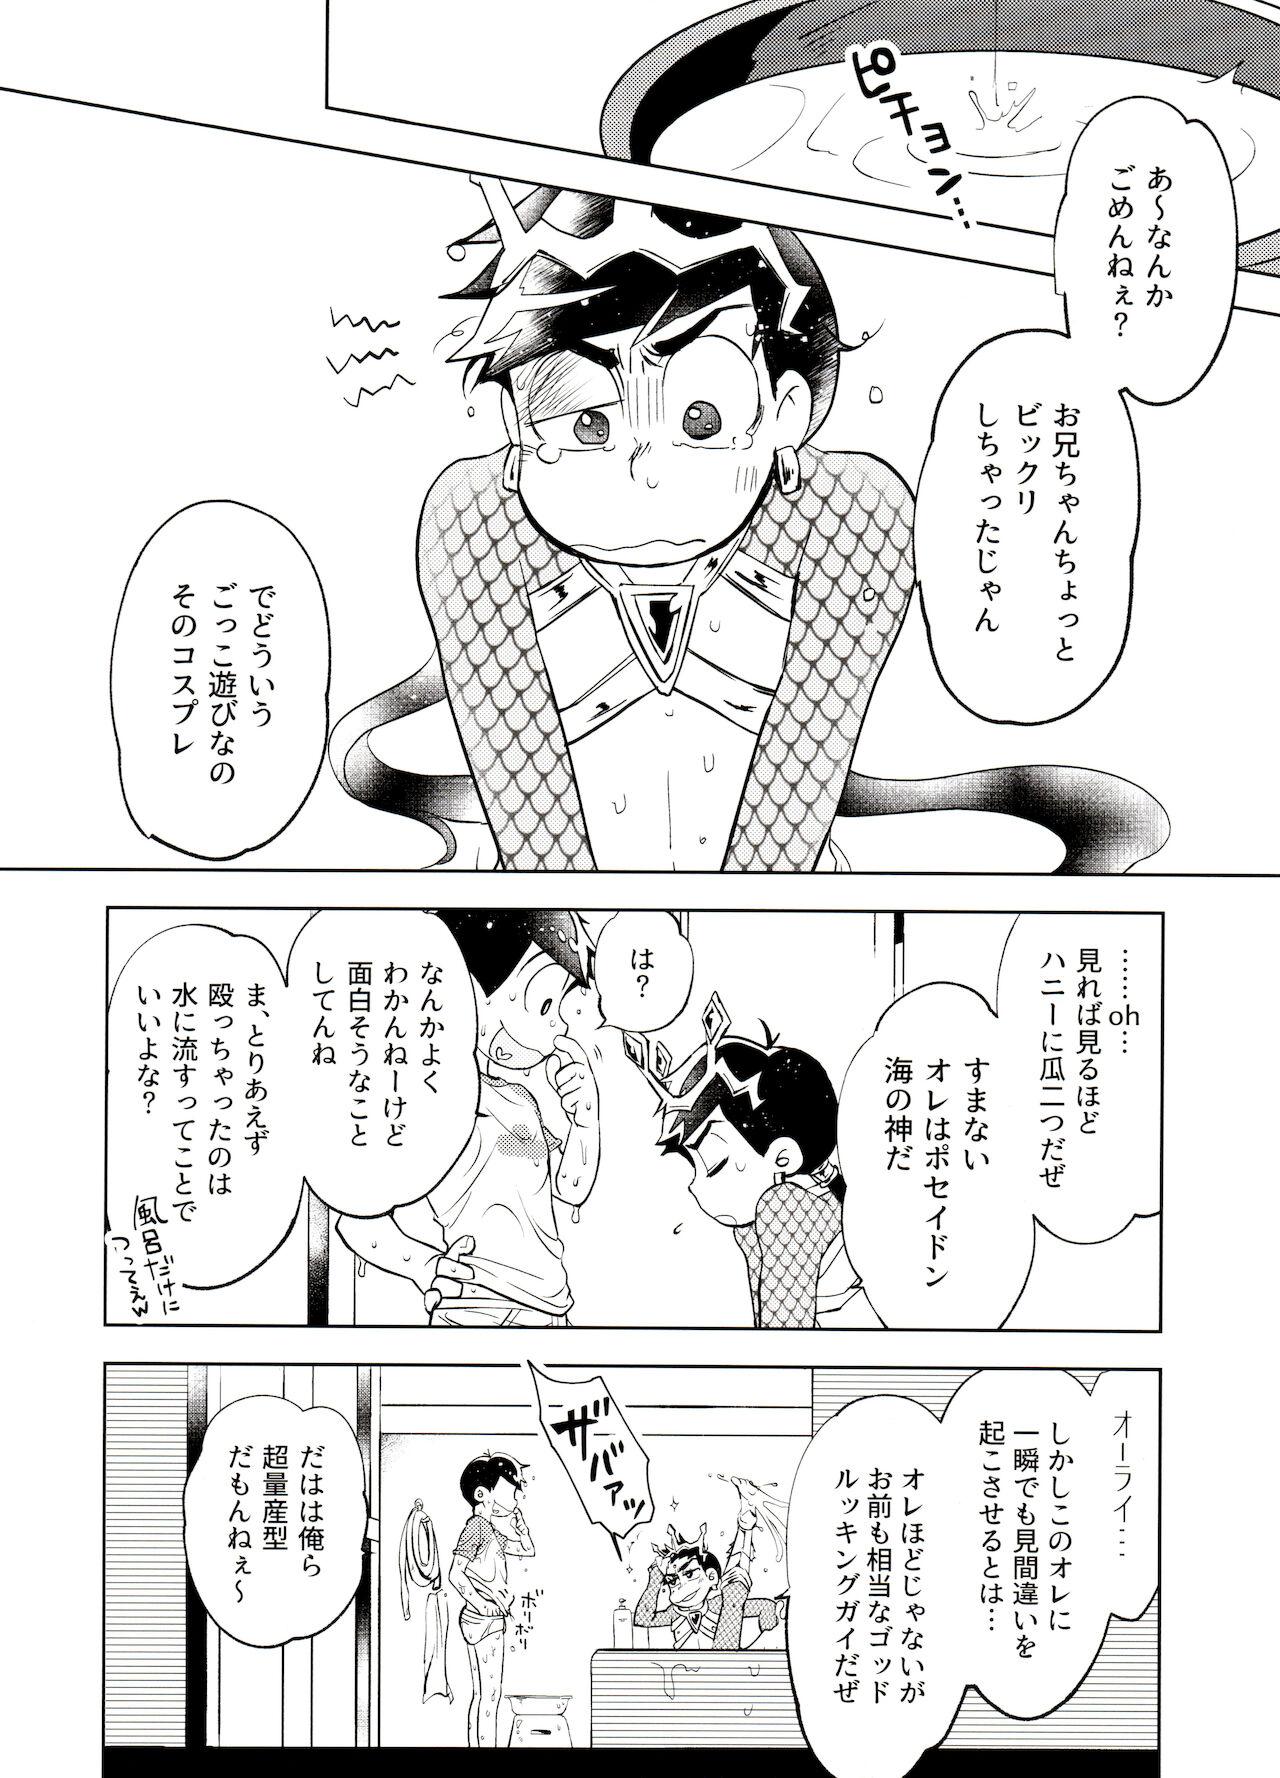 Smoking Honjitsu wa Tokoro ni Yori Kaminari o Tomonatta Kami to Narudeshou. - Osomatsu-san Punish - Page 7